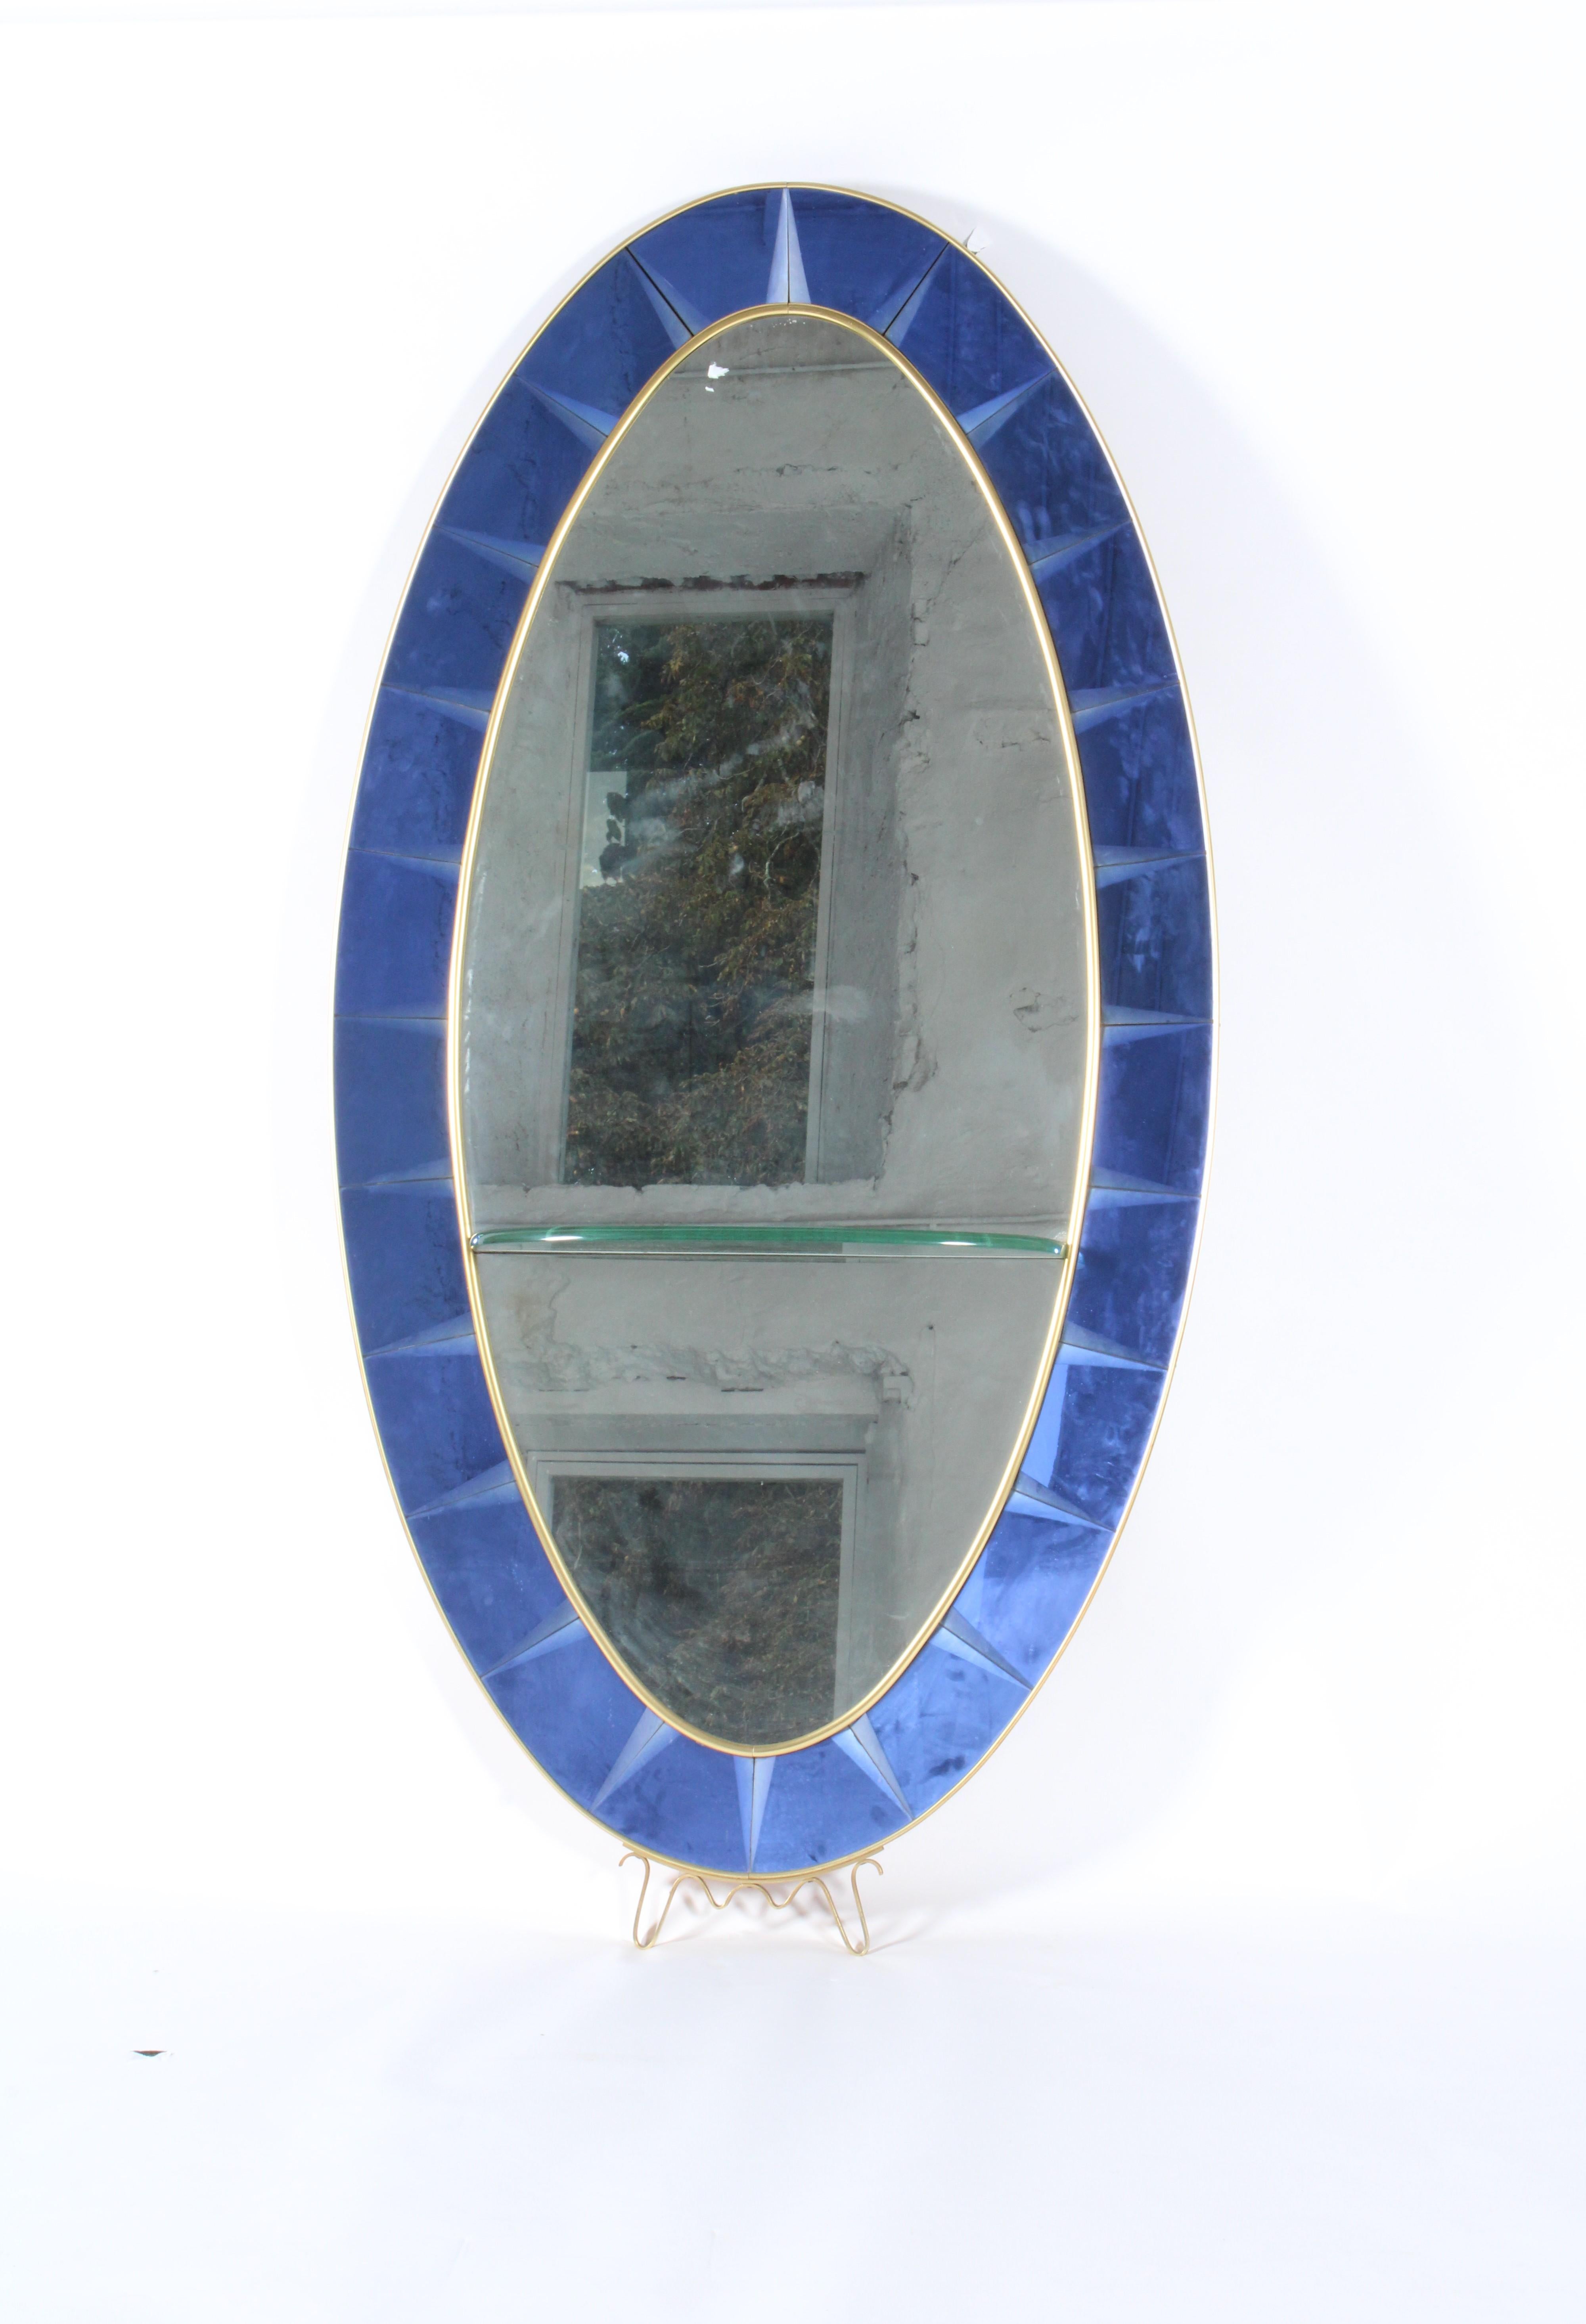  La quintessence du style italien du milieu du siècle et de la sophistication, nous sommes ravis de présenter à la vente ce miroir exceptionnel de Cristal Arte de Turin. Ce modèle provient directement d'une collection privée de Turin, en Italie. Il